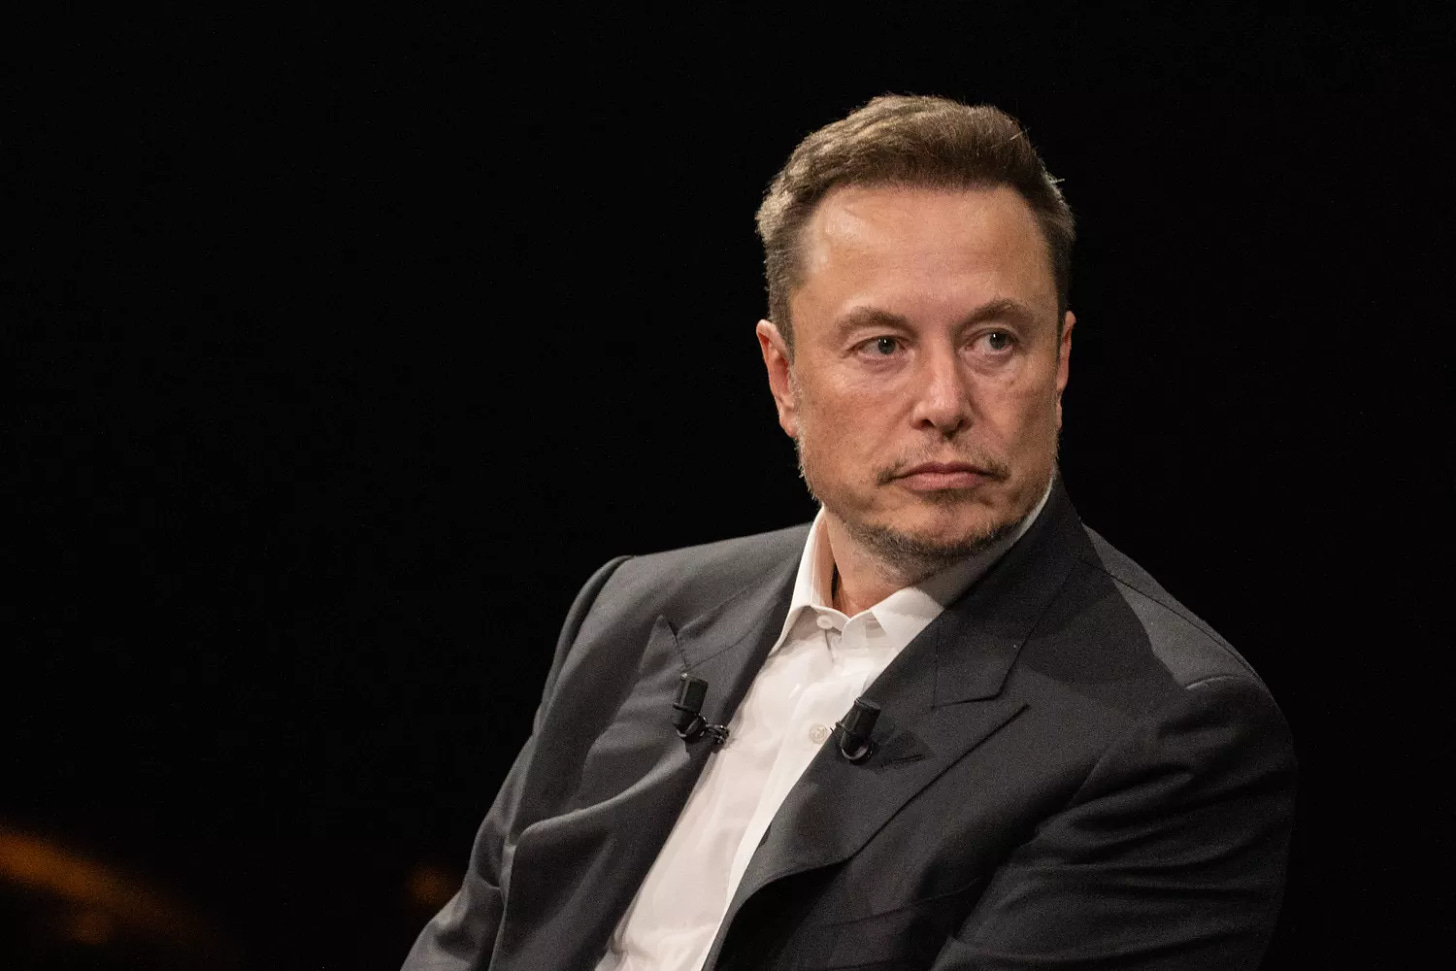 Tesla CEO Elon Musk at an event.